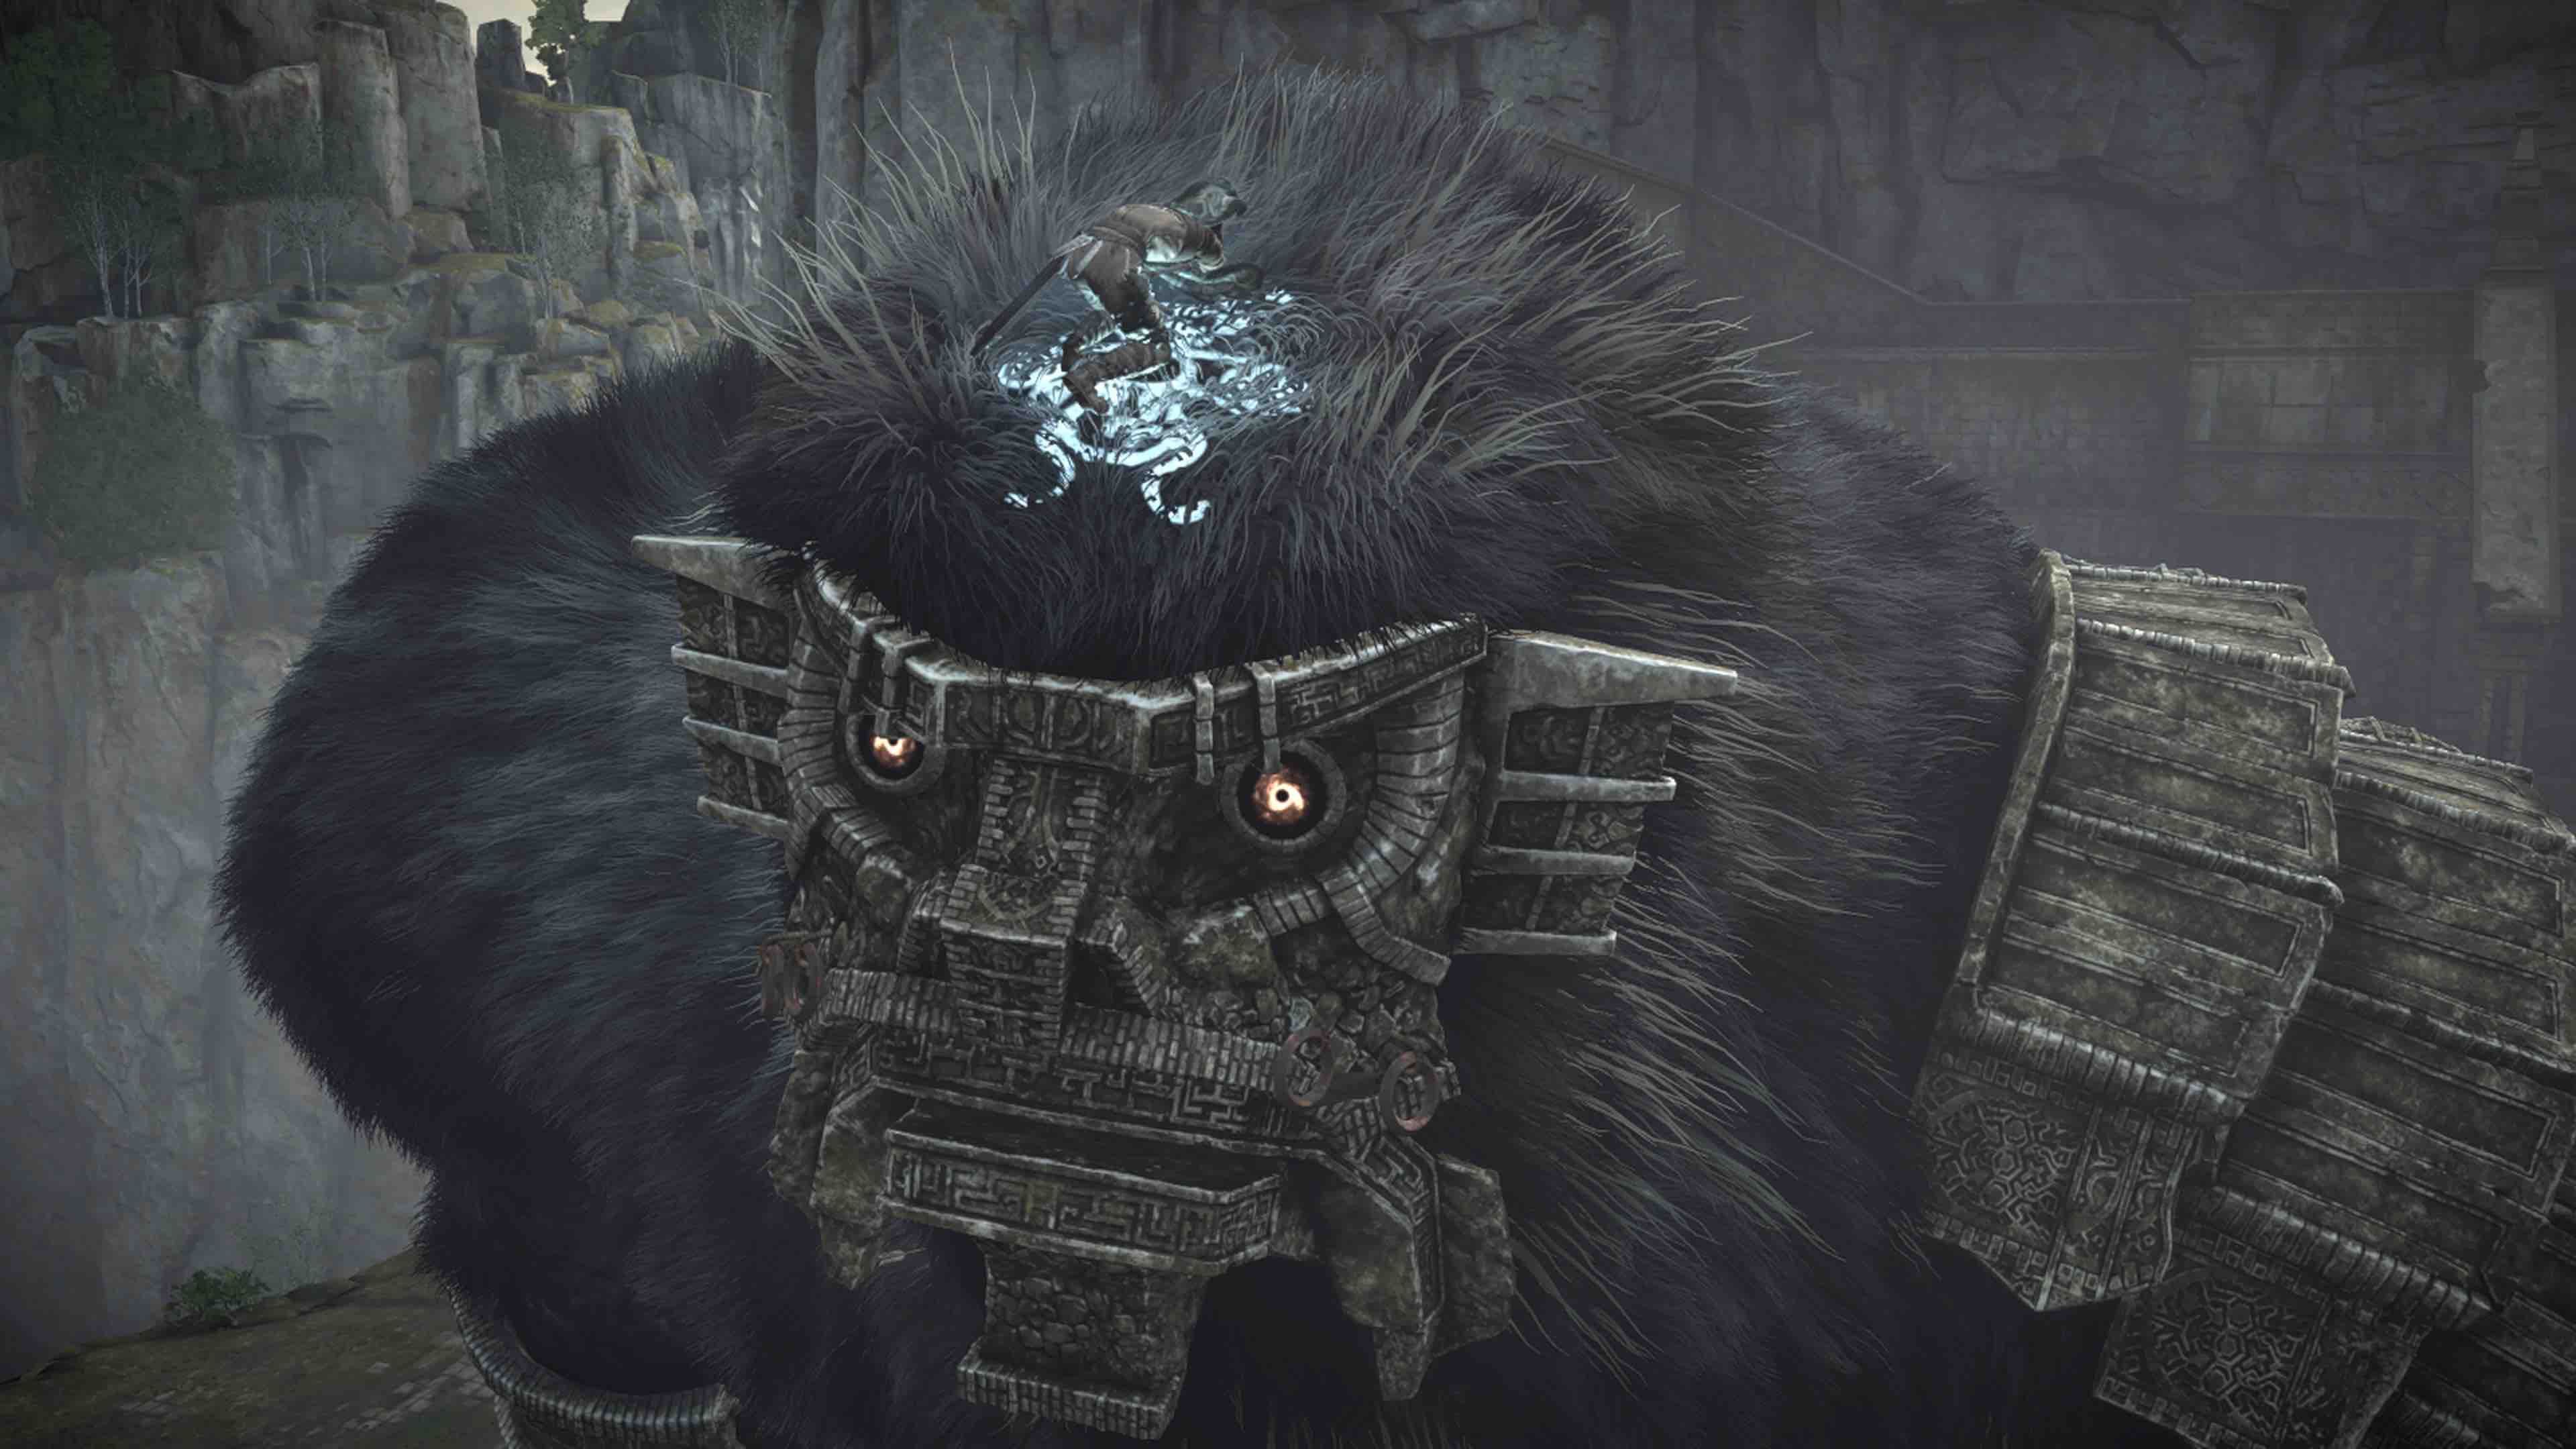 El nivel de detalle de Shadow of the Colossus en PS4 es infinitamente superior. Sirva como ejemplo el pelaje de los Colosos, que se comporta de manera más natural y realista ante embestidas, nuestro agarre, etc.